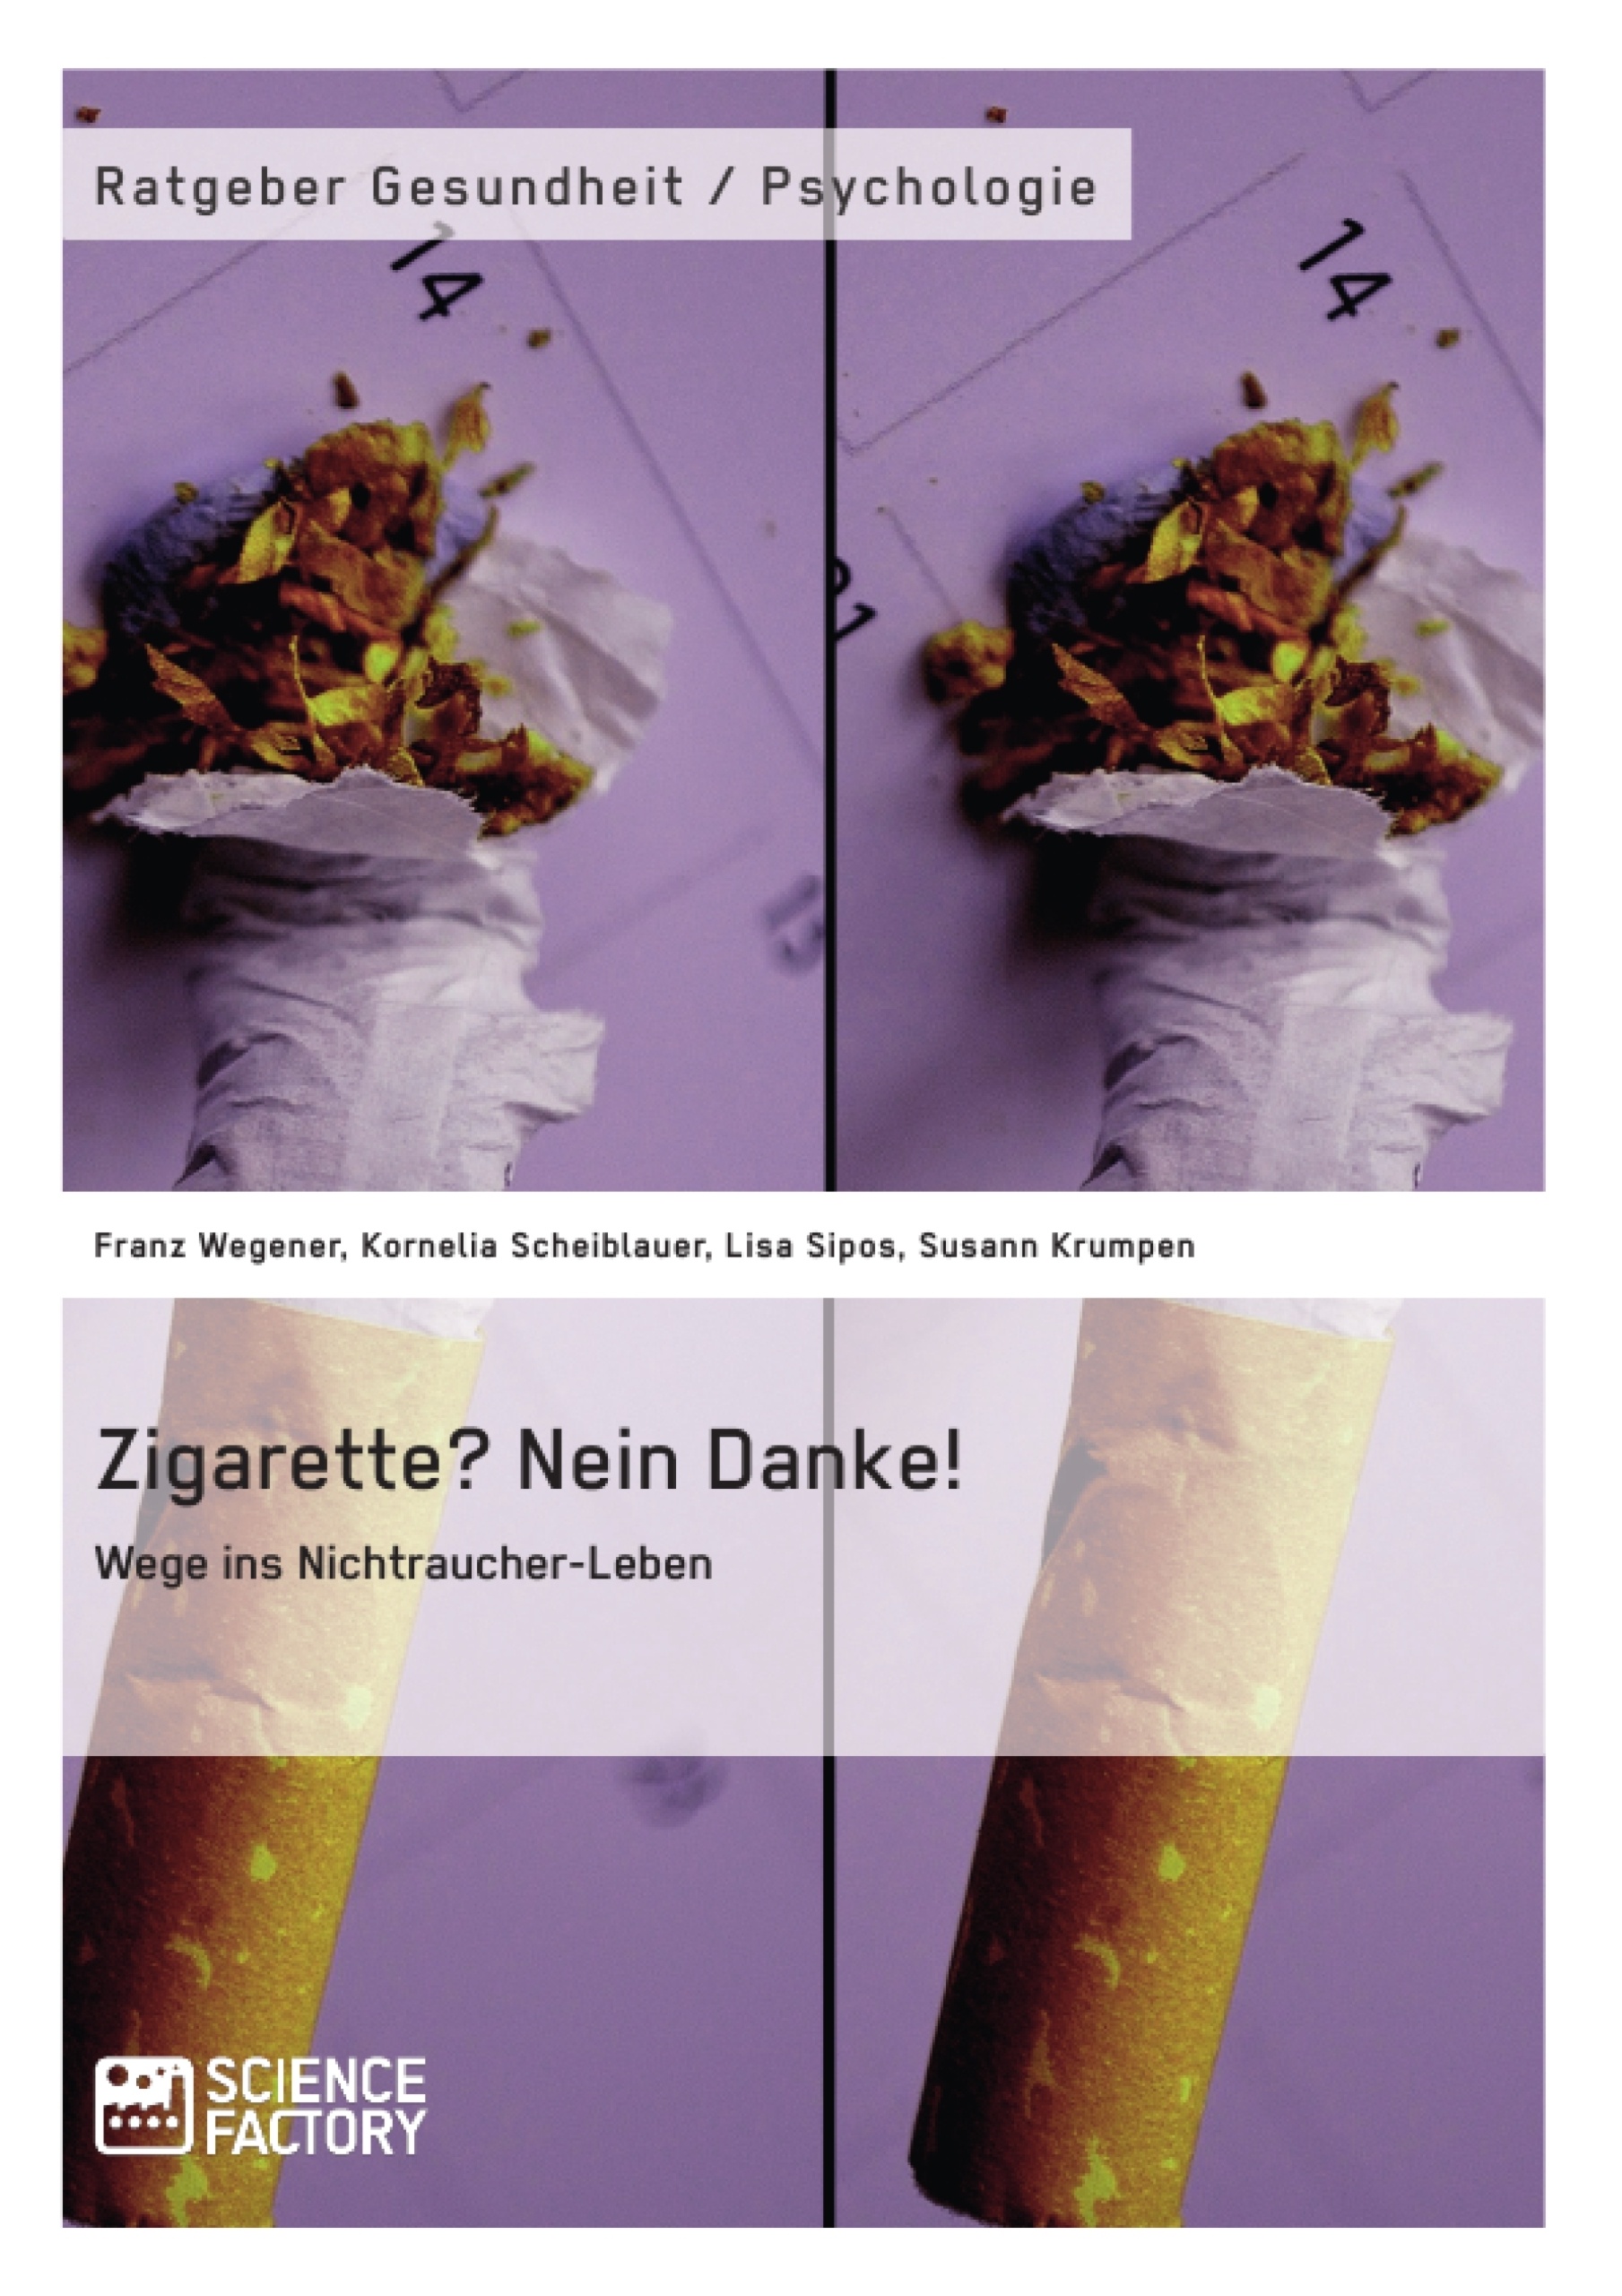 Titre: Zigarette? Nein Danke! Wege ins Nichtraucher-Leben